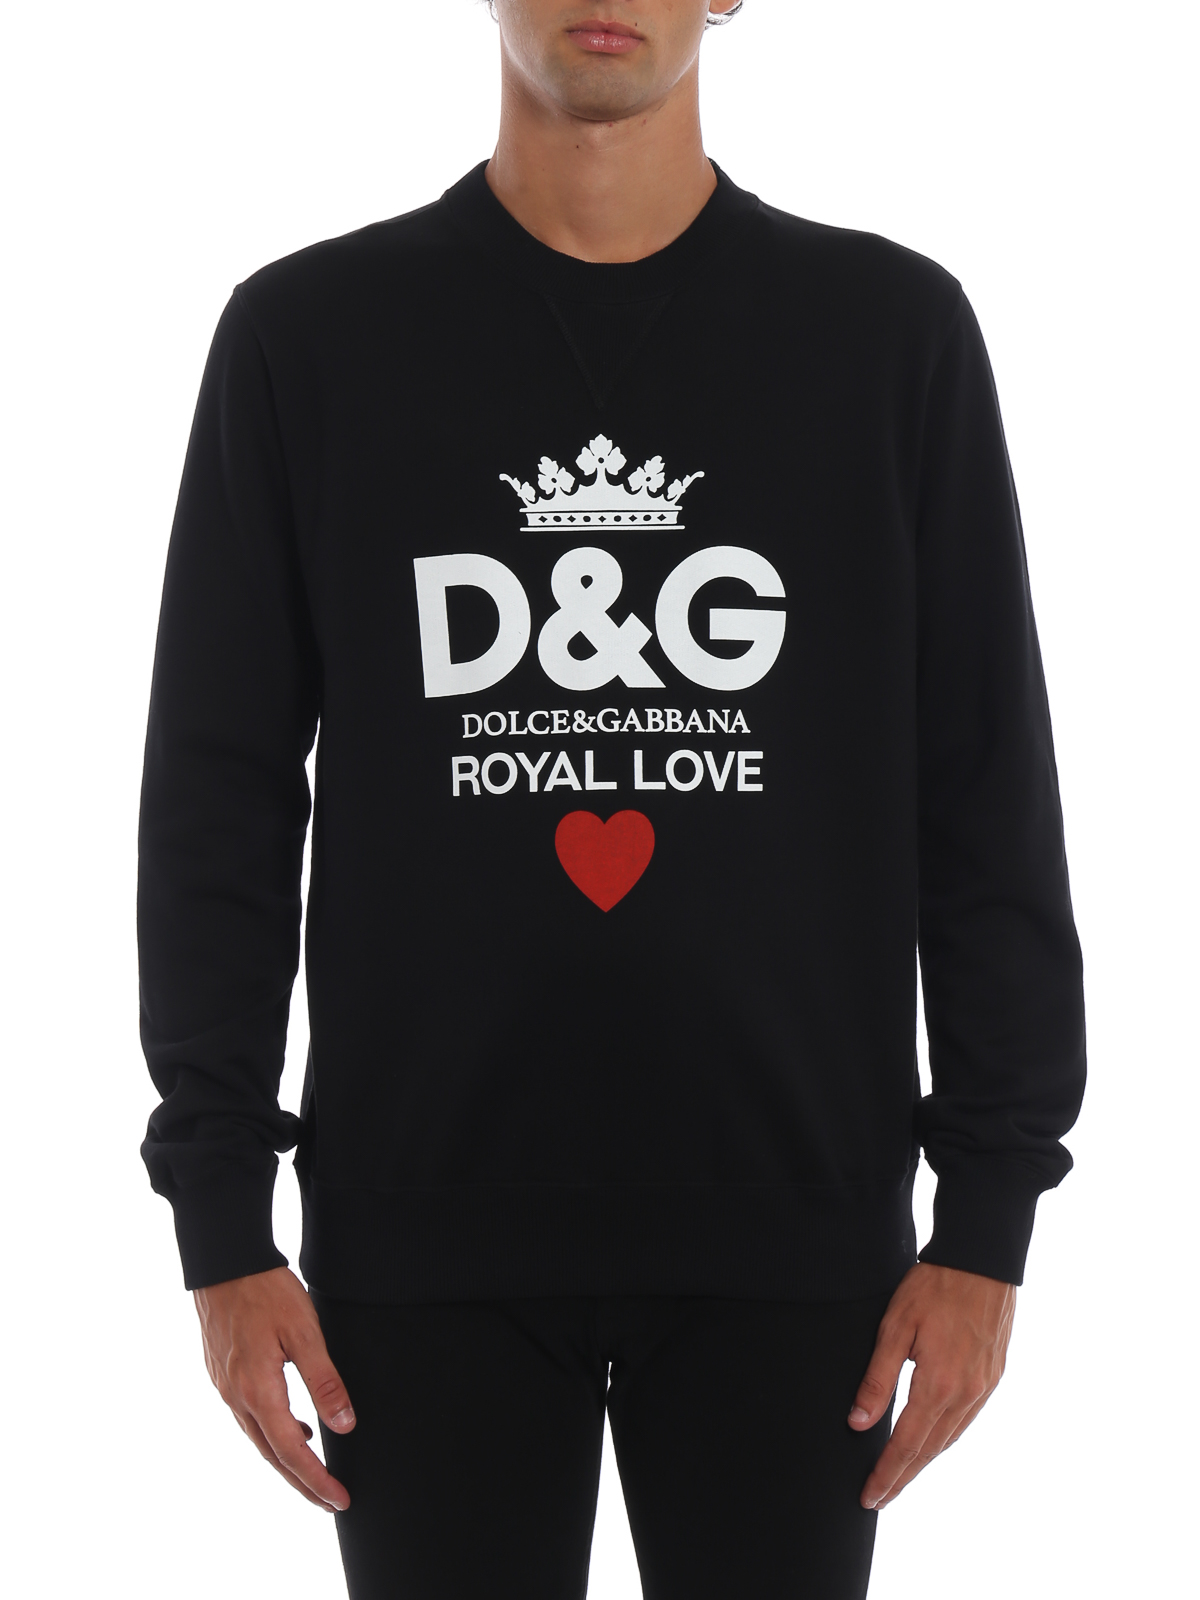 dolce gabbana royal love sweater